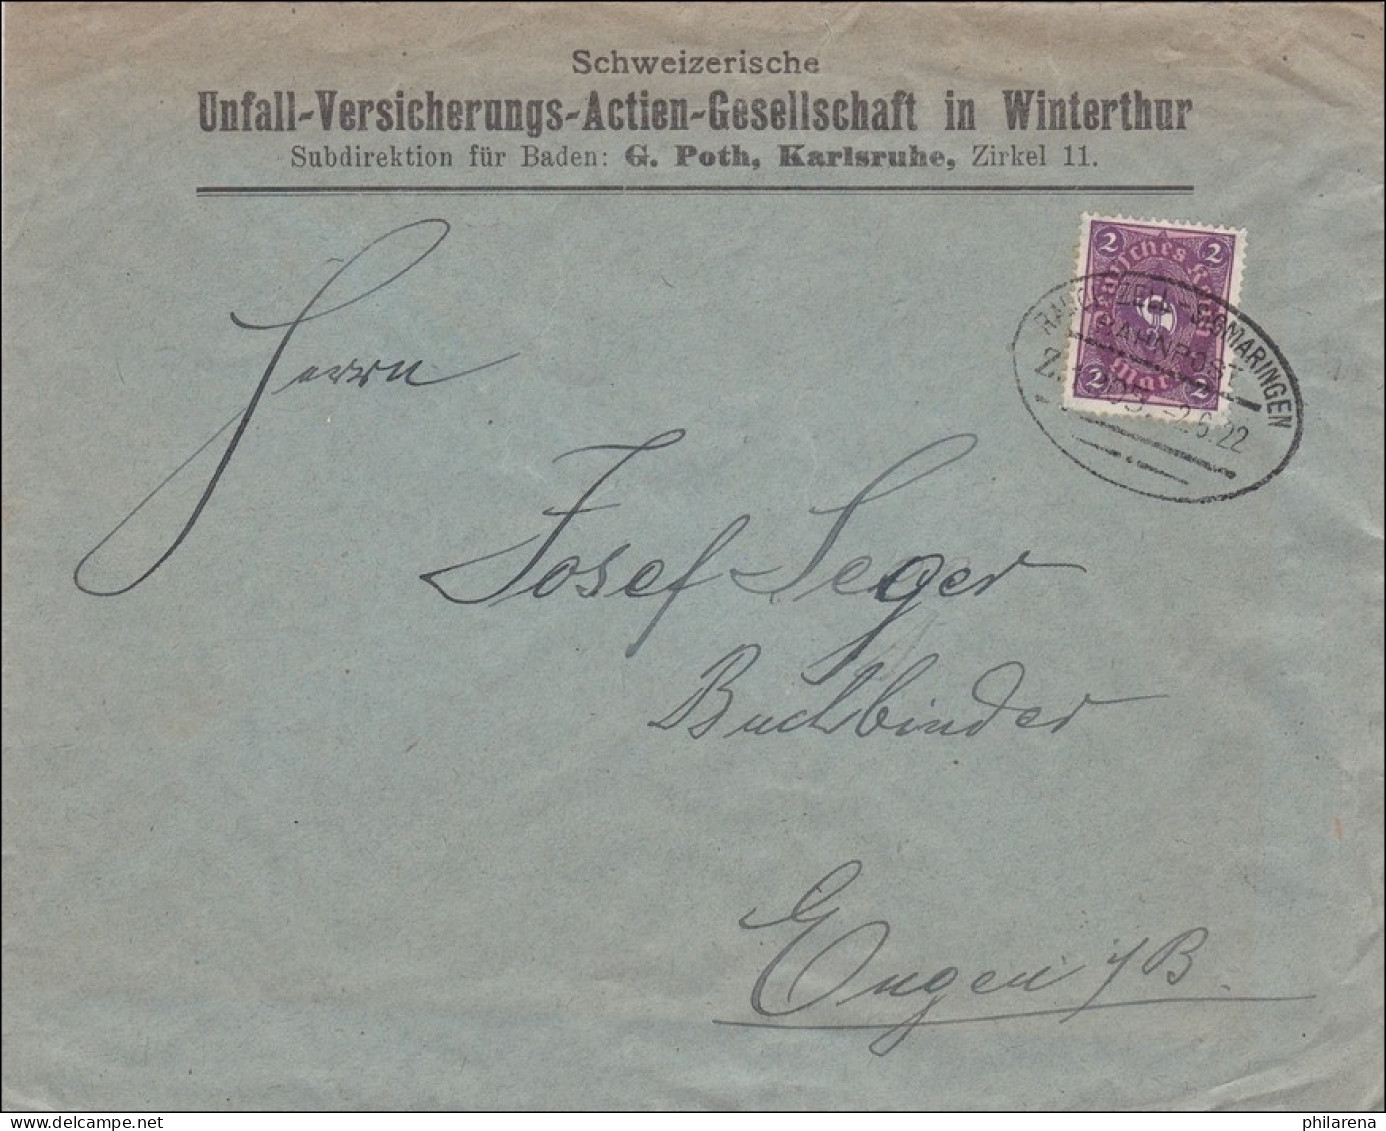 Bahnpost: Brief Von Karlsruhe Mit Zugstempel Radolfzell-Sigmaringen 1922 - Lettres & Documents